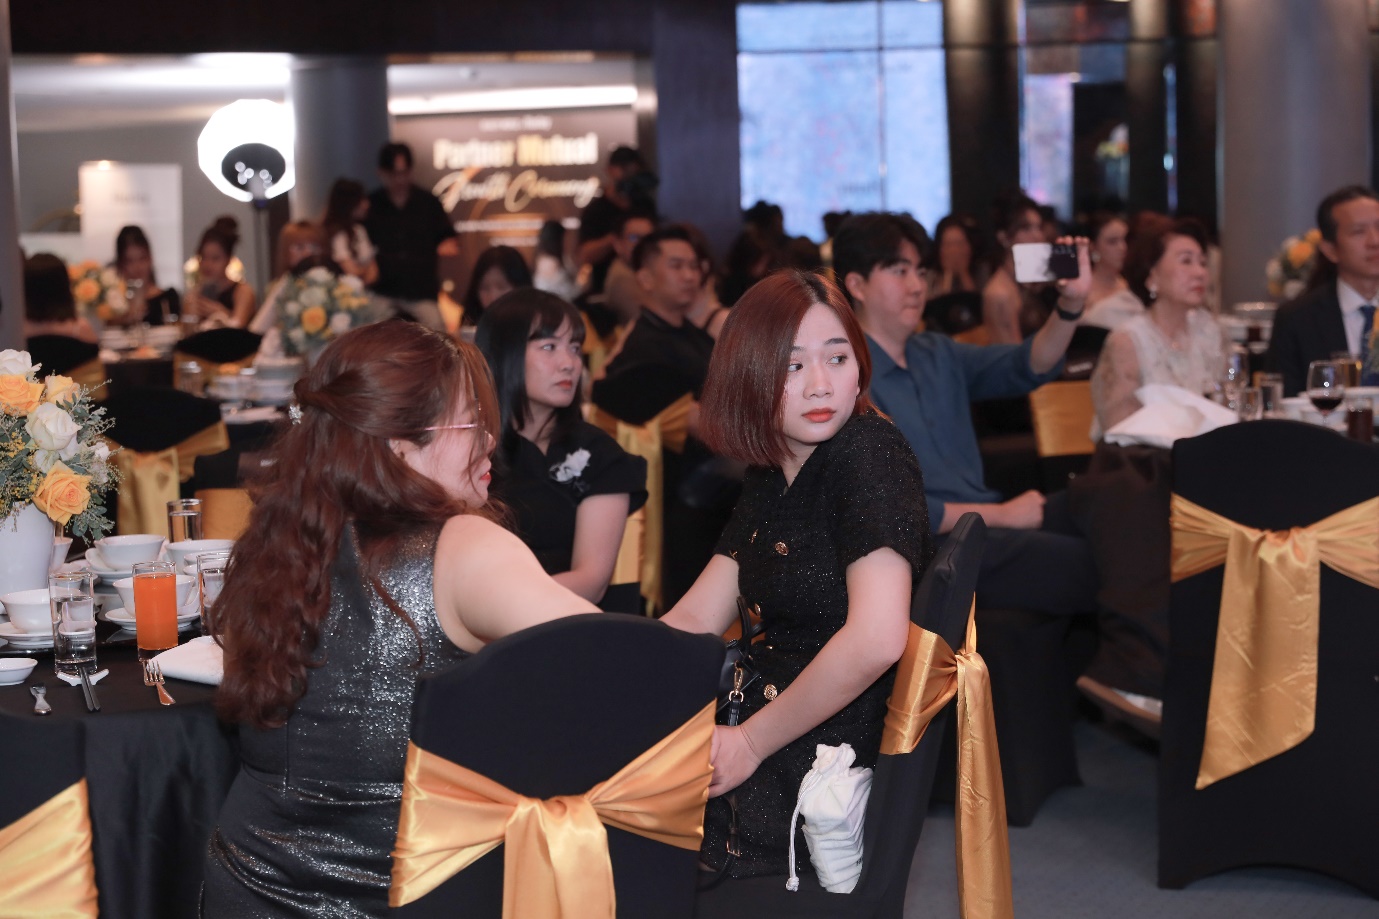 Beauty World nhìn nhận, các đối tác đại lý là nhân tố quan trọng và quyết định sự thành công của kế hoạch phát triển thương hiệu Huxley tại Việt Nam.